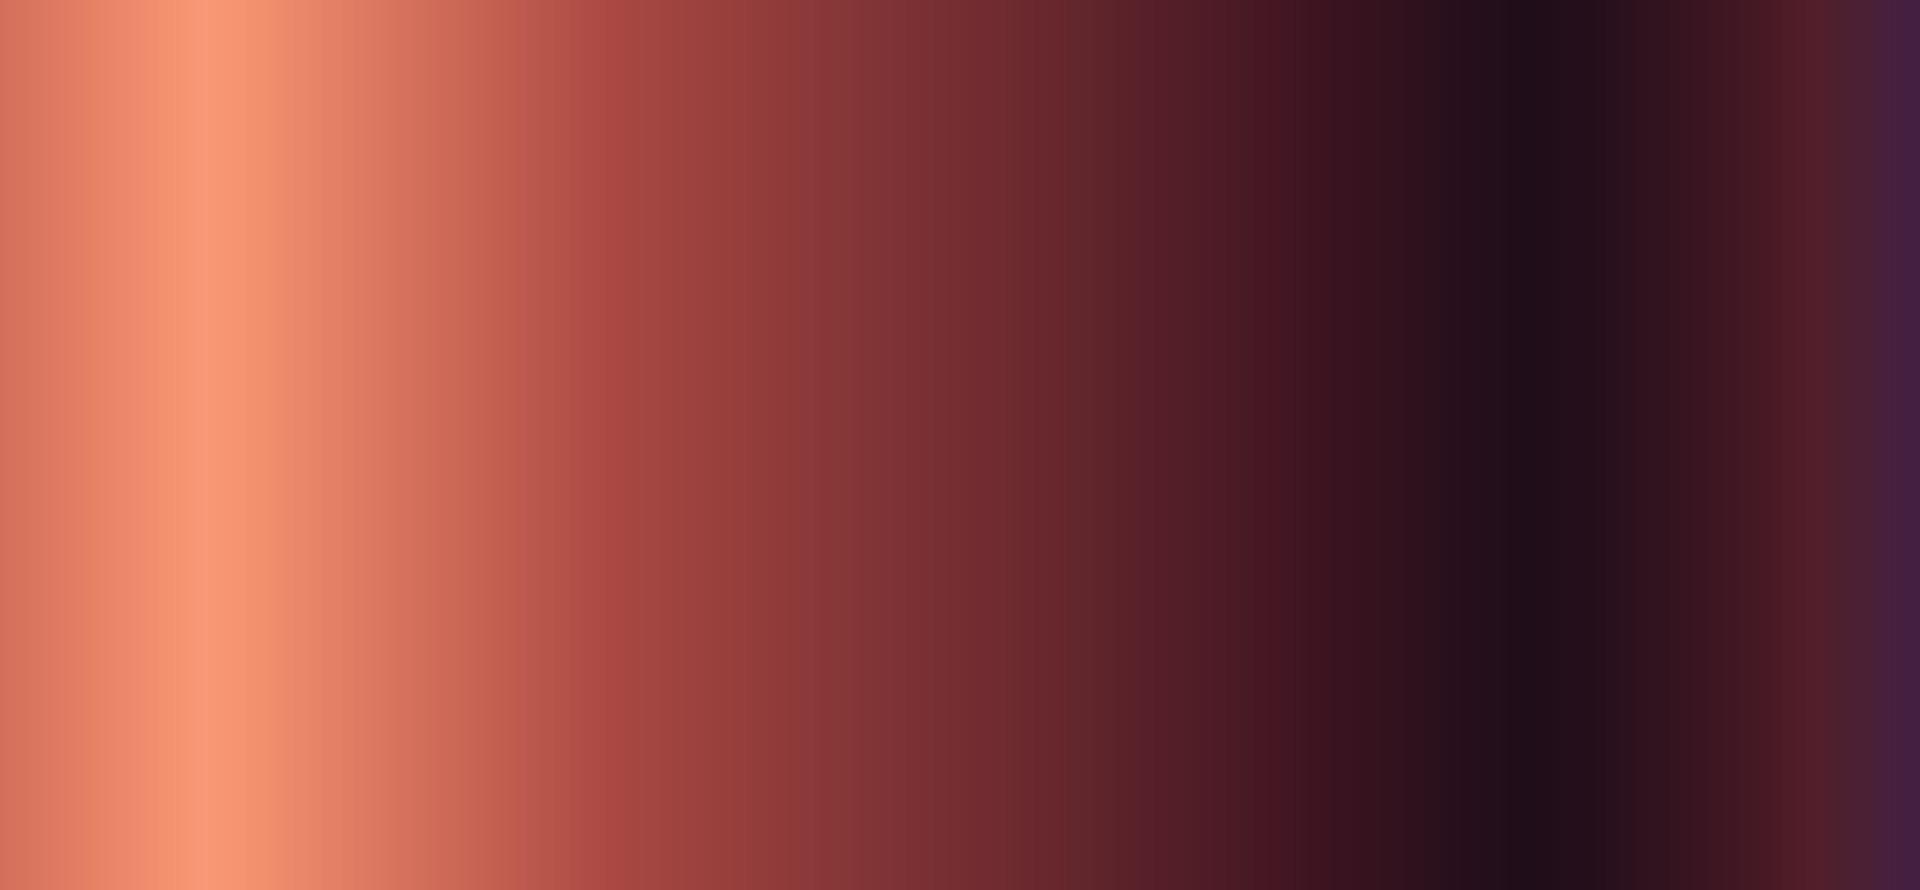 Hintergrund mit weichem Farbverlauf von hell nach dunkel vektor